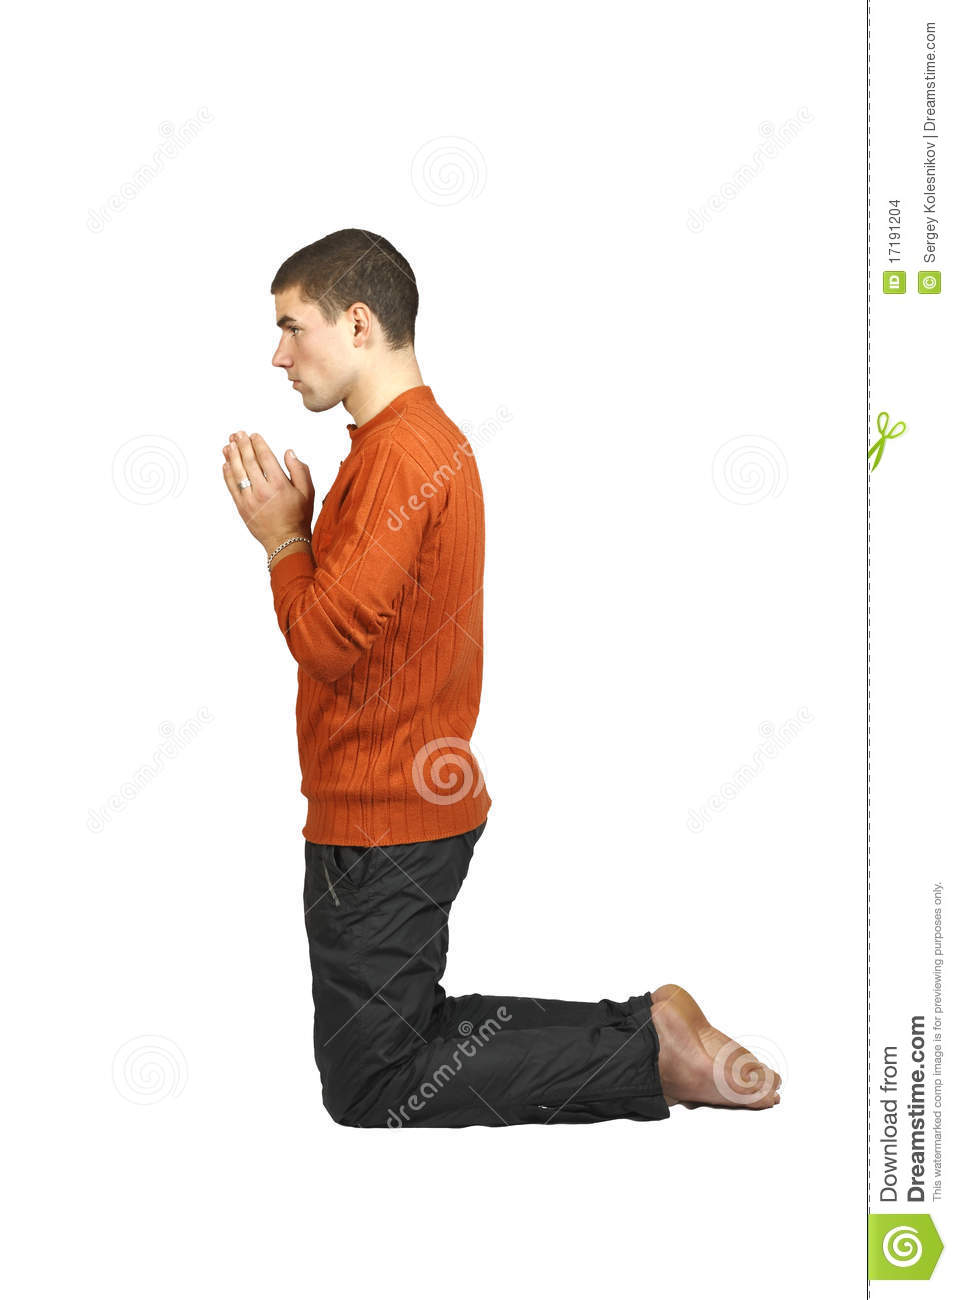 man-praying-his-knees-17191204.jpg